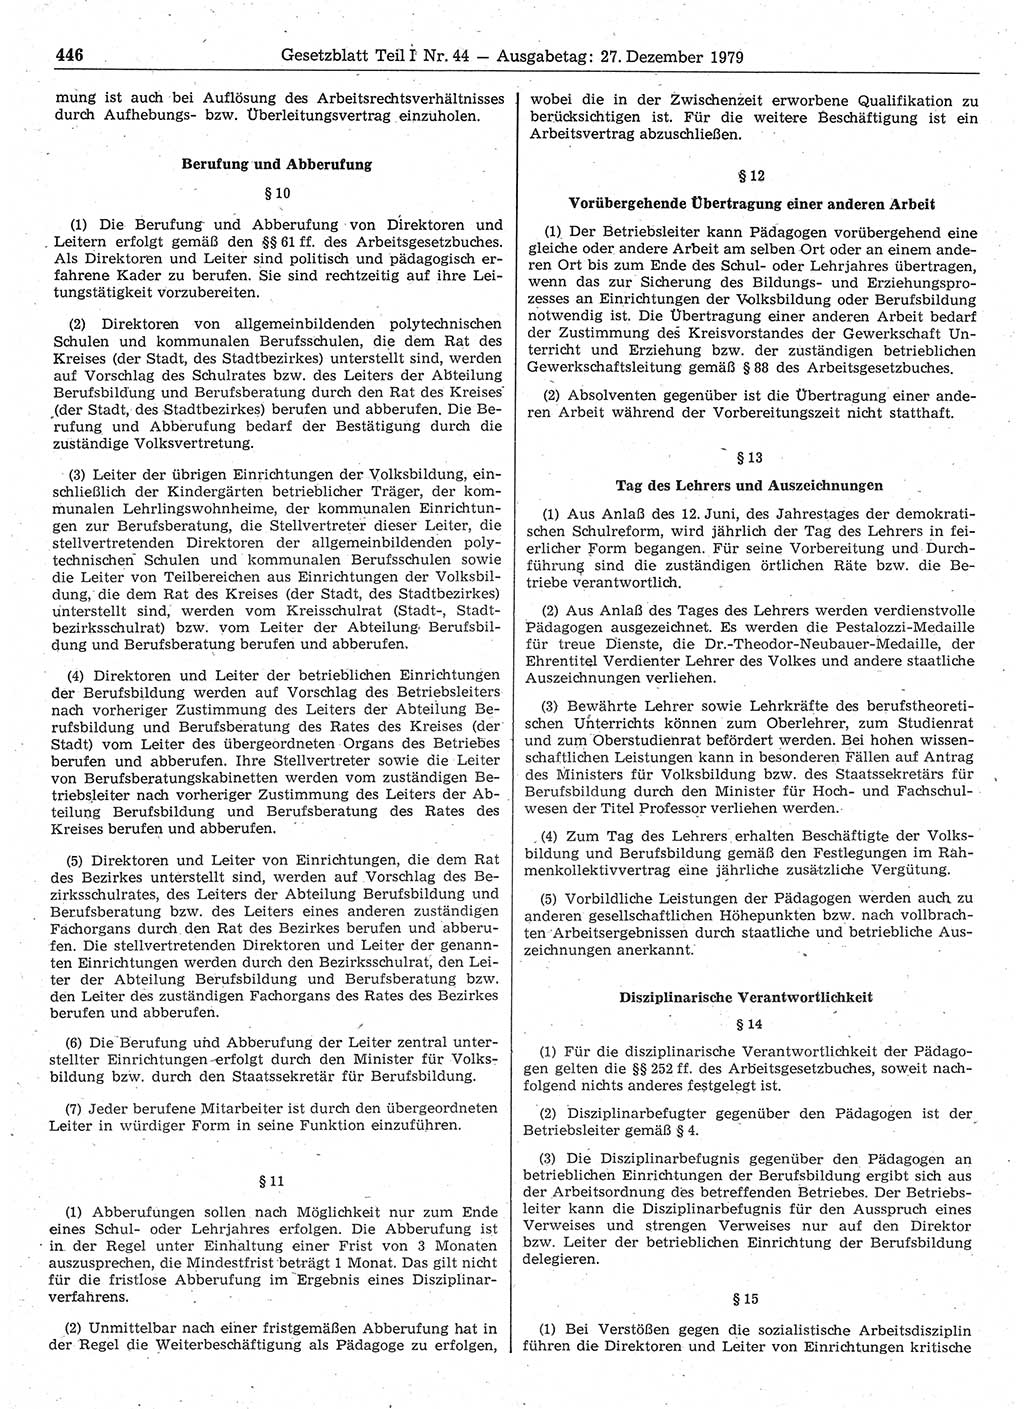 Gesetzblatt (GBl.) der Deutschen Demokratischen Republik (DDR) Teil Ⅰ 1979, Seite 446 (GBl. DDR Ⅰ 1979, S. 446)